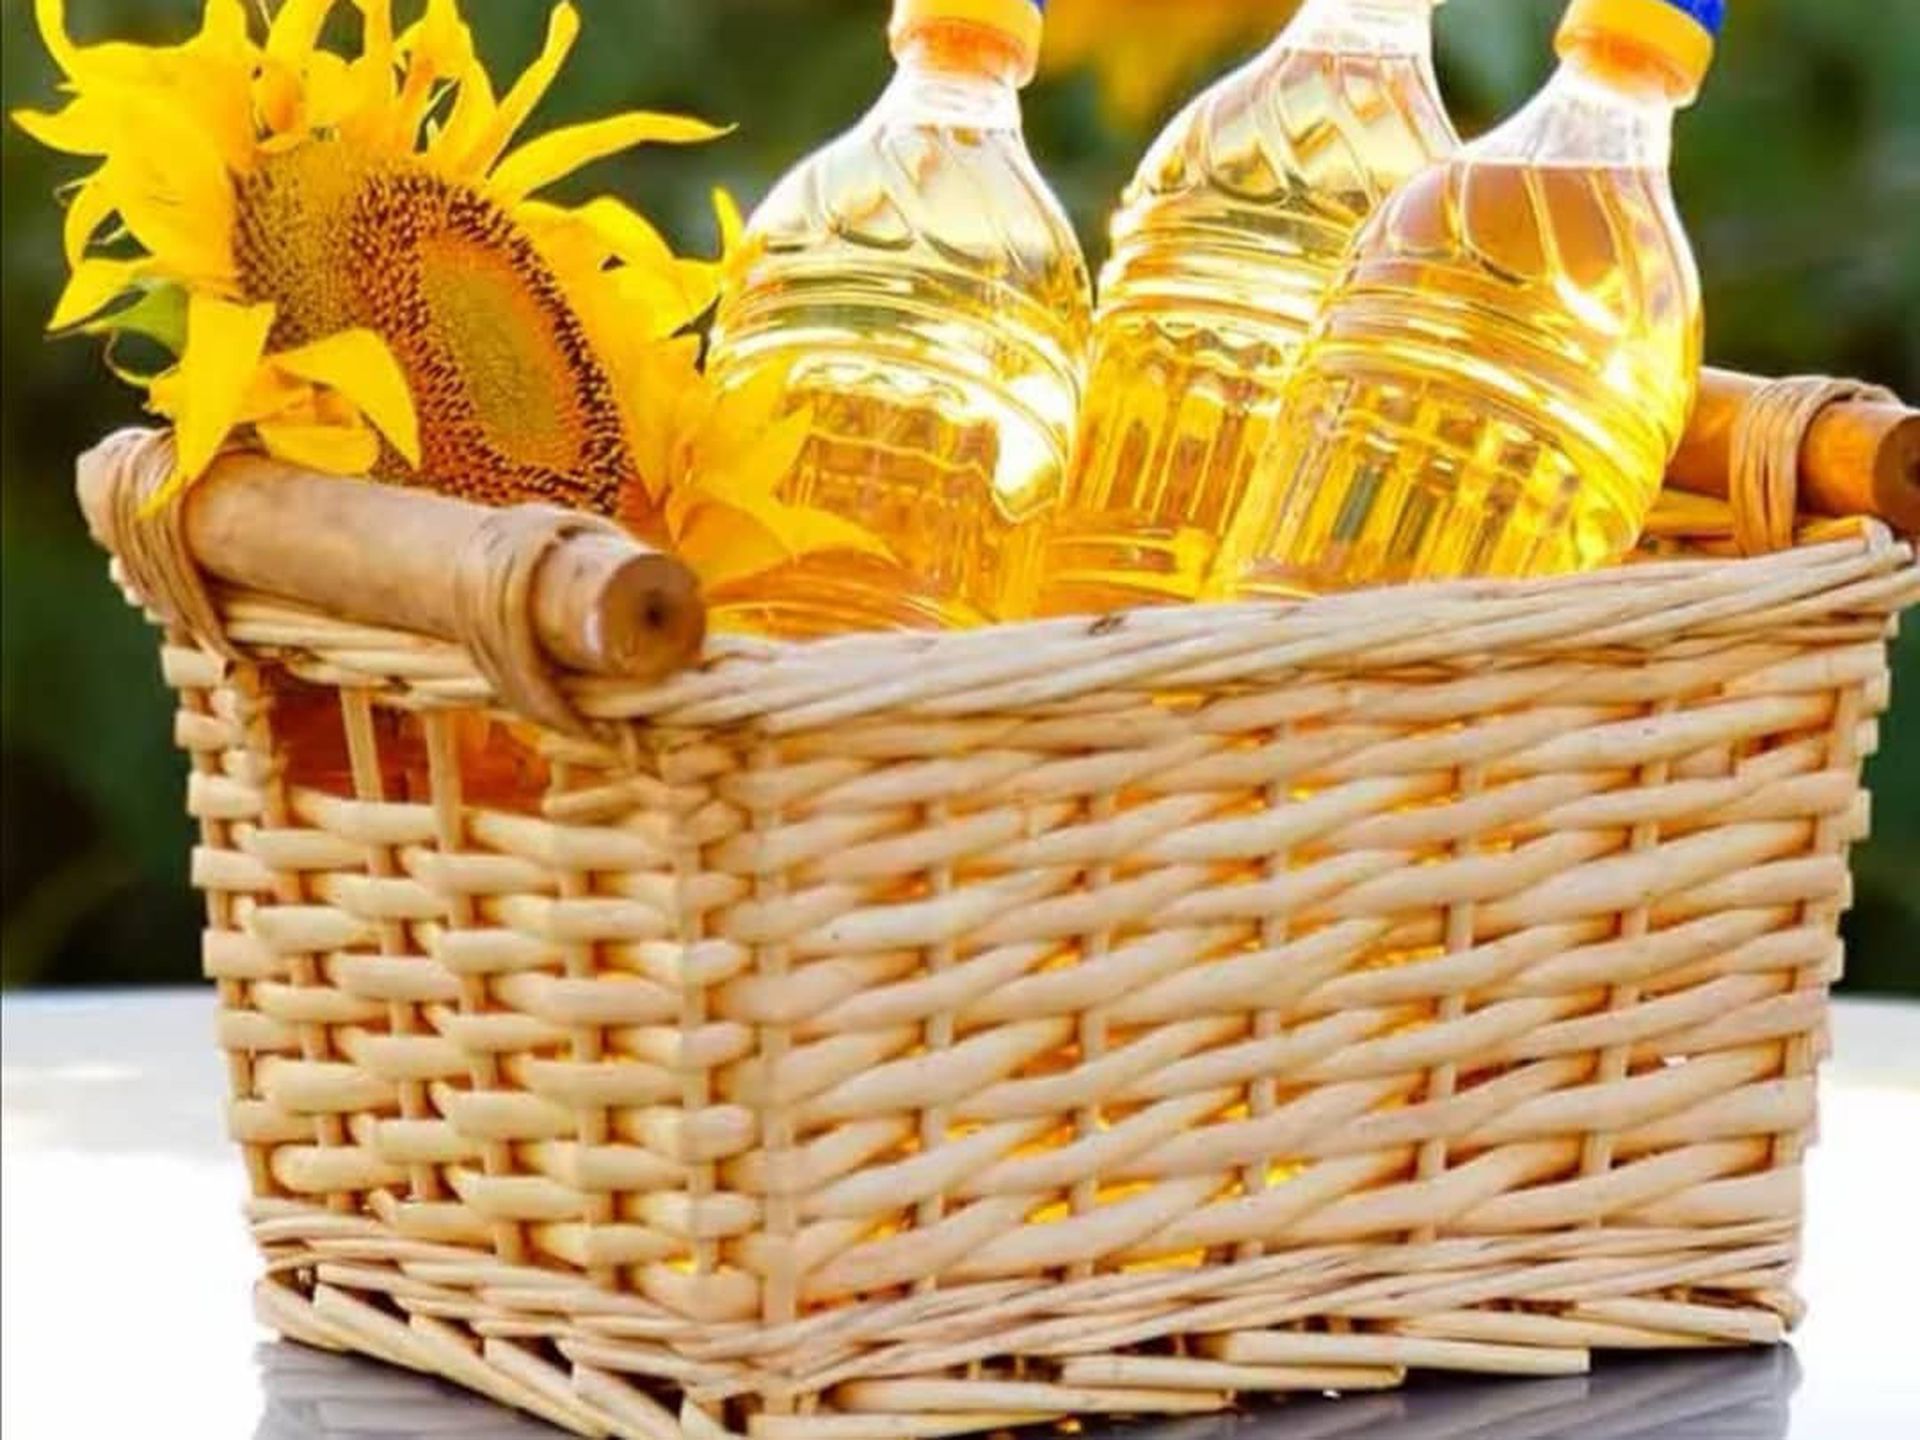 Прості способи заощадження рослинної олії, щоб пляшки вистачило на кілька місяців. Помірне вживання олії покращить ваше здоров'я.